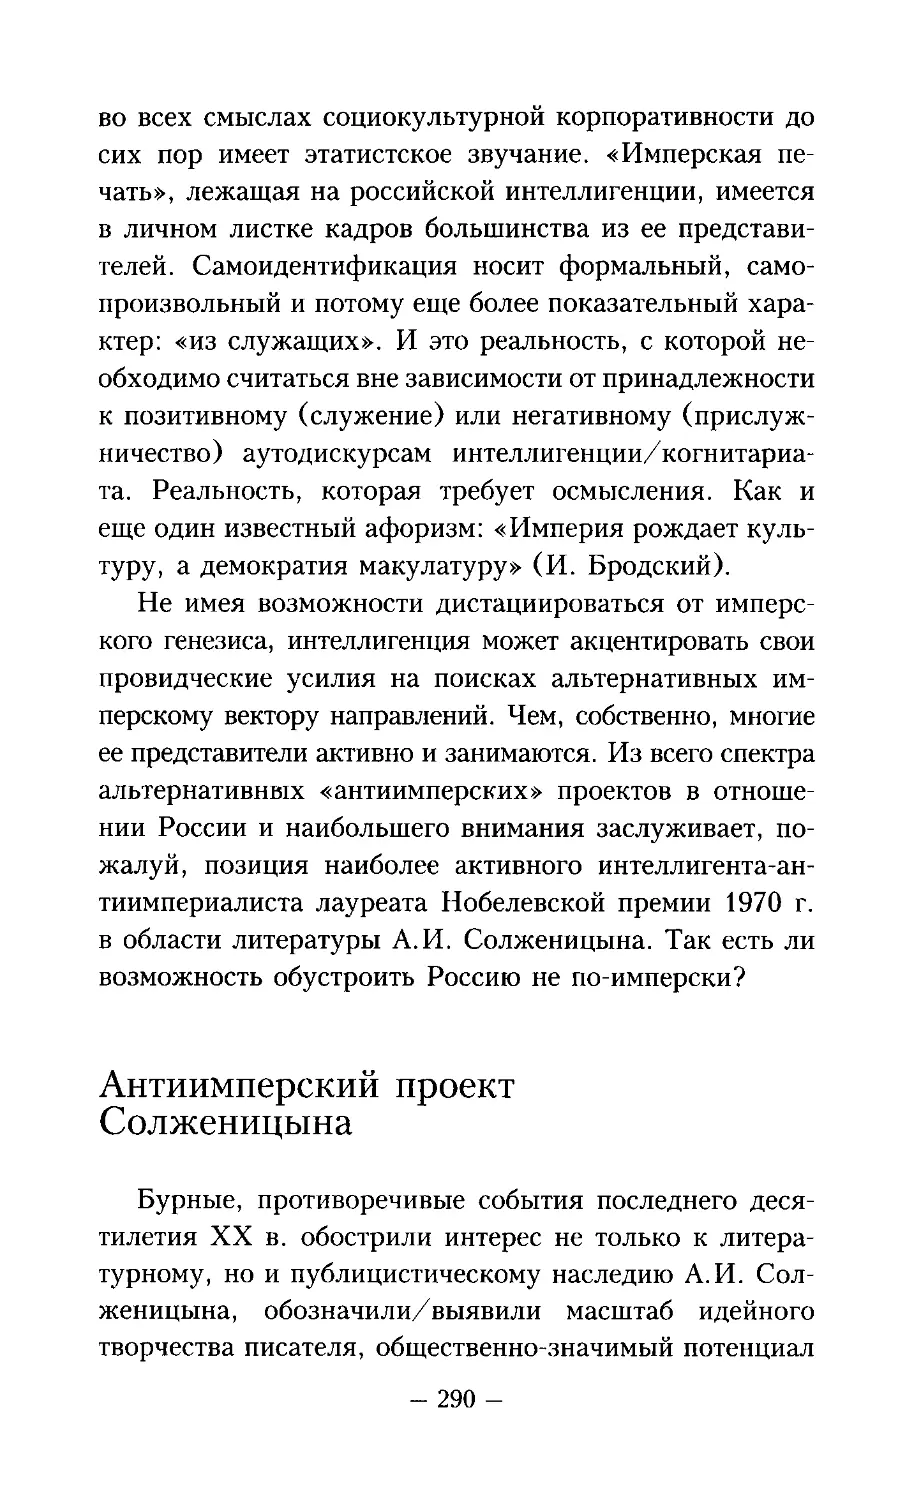 ﻿Антиимперский проект Солженицын